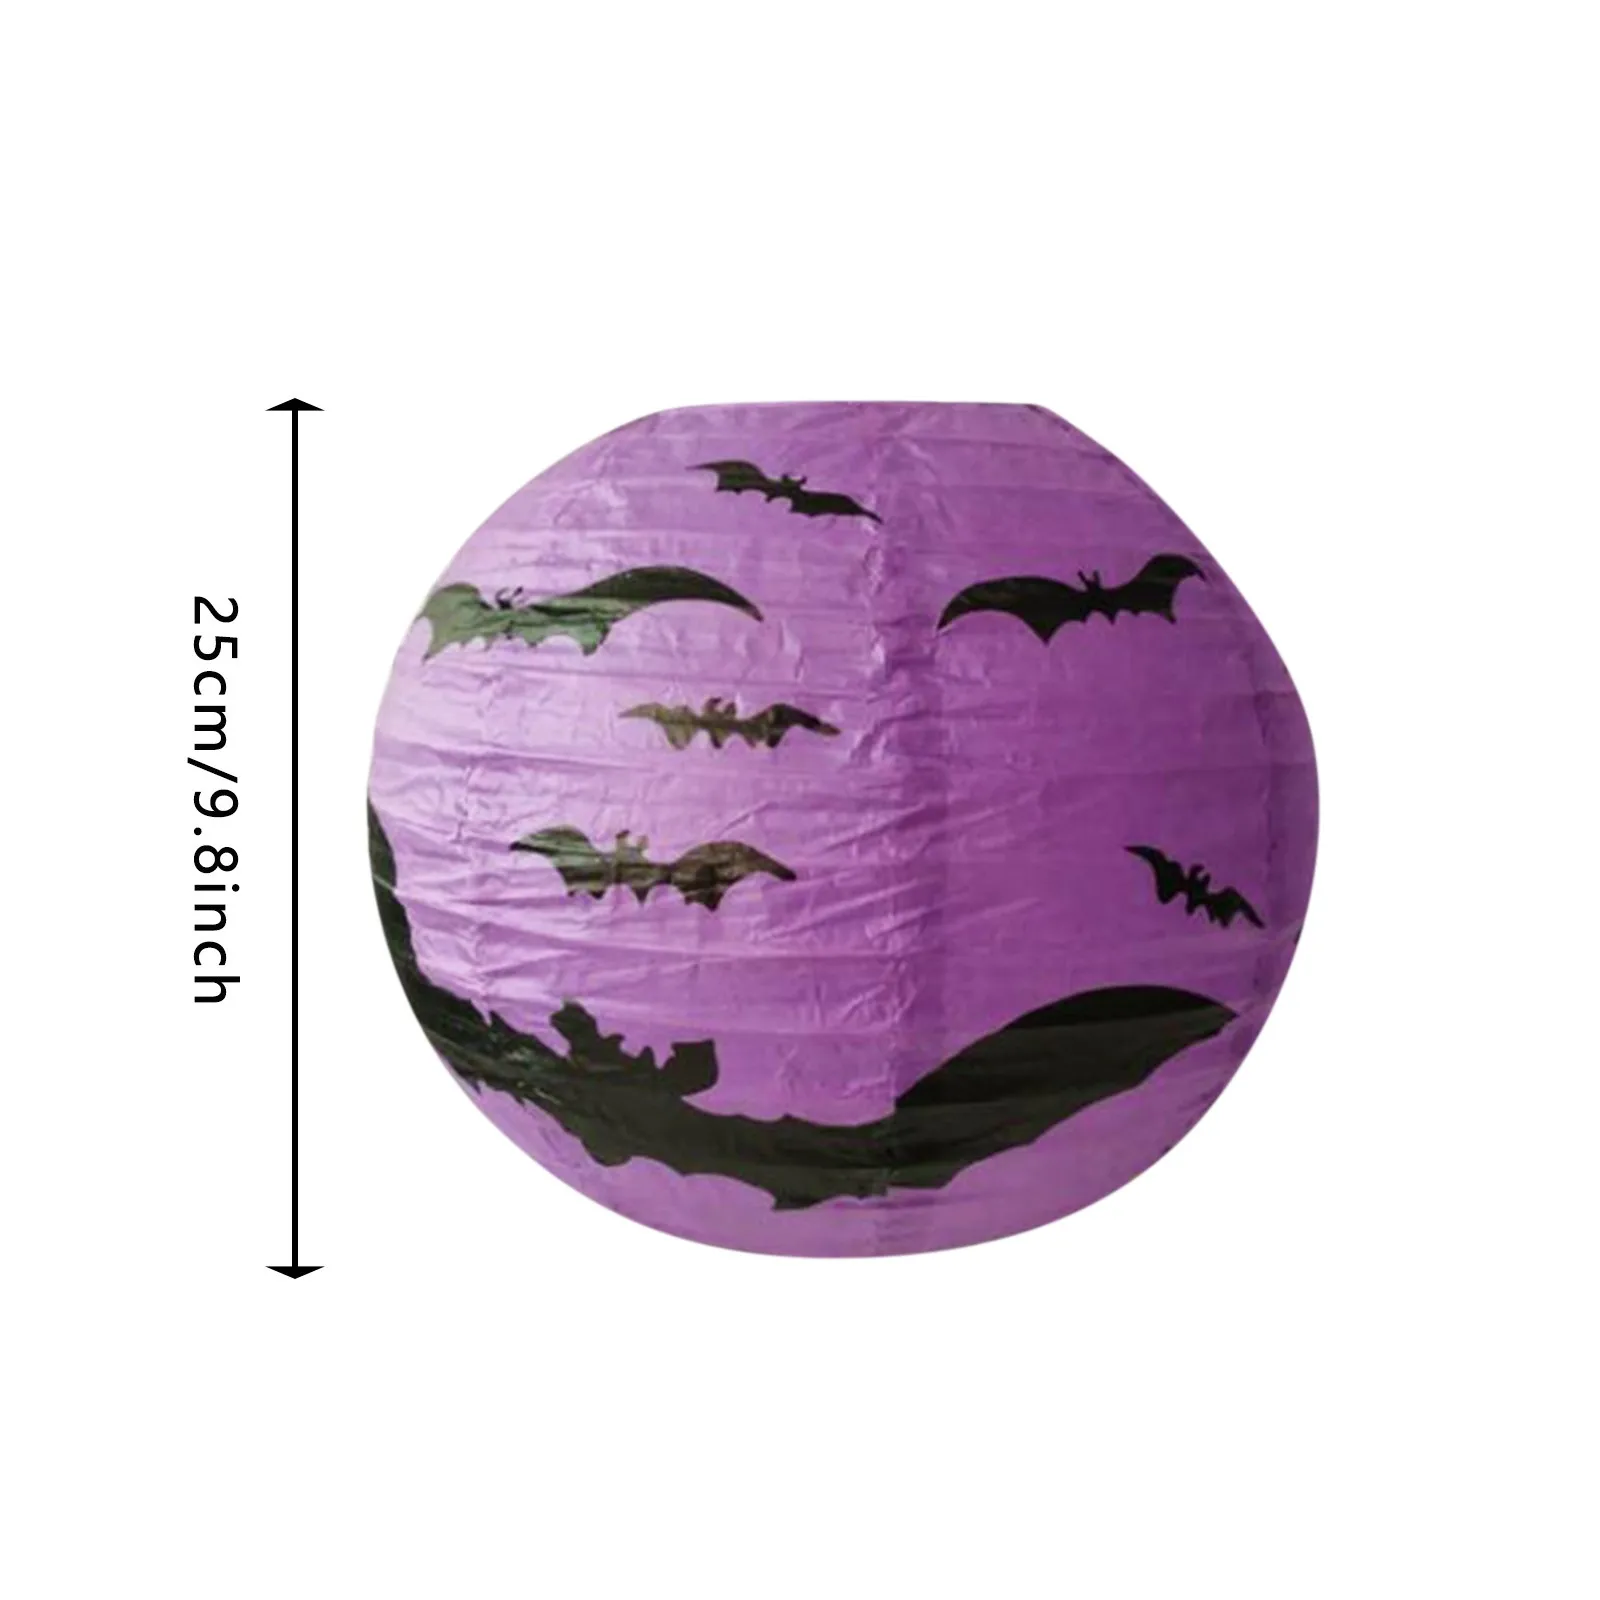 Реквизит Бумажный кулон Фестиваль Складное украшение Хэллоуин Домашний декор Блестящие занавески для дверных проемов